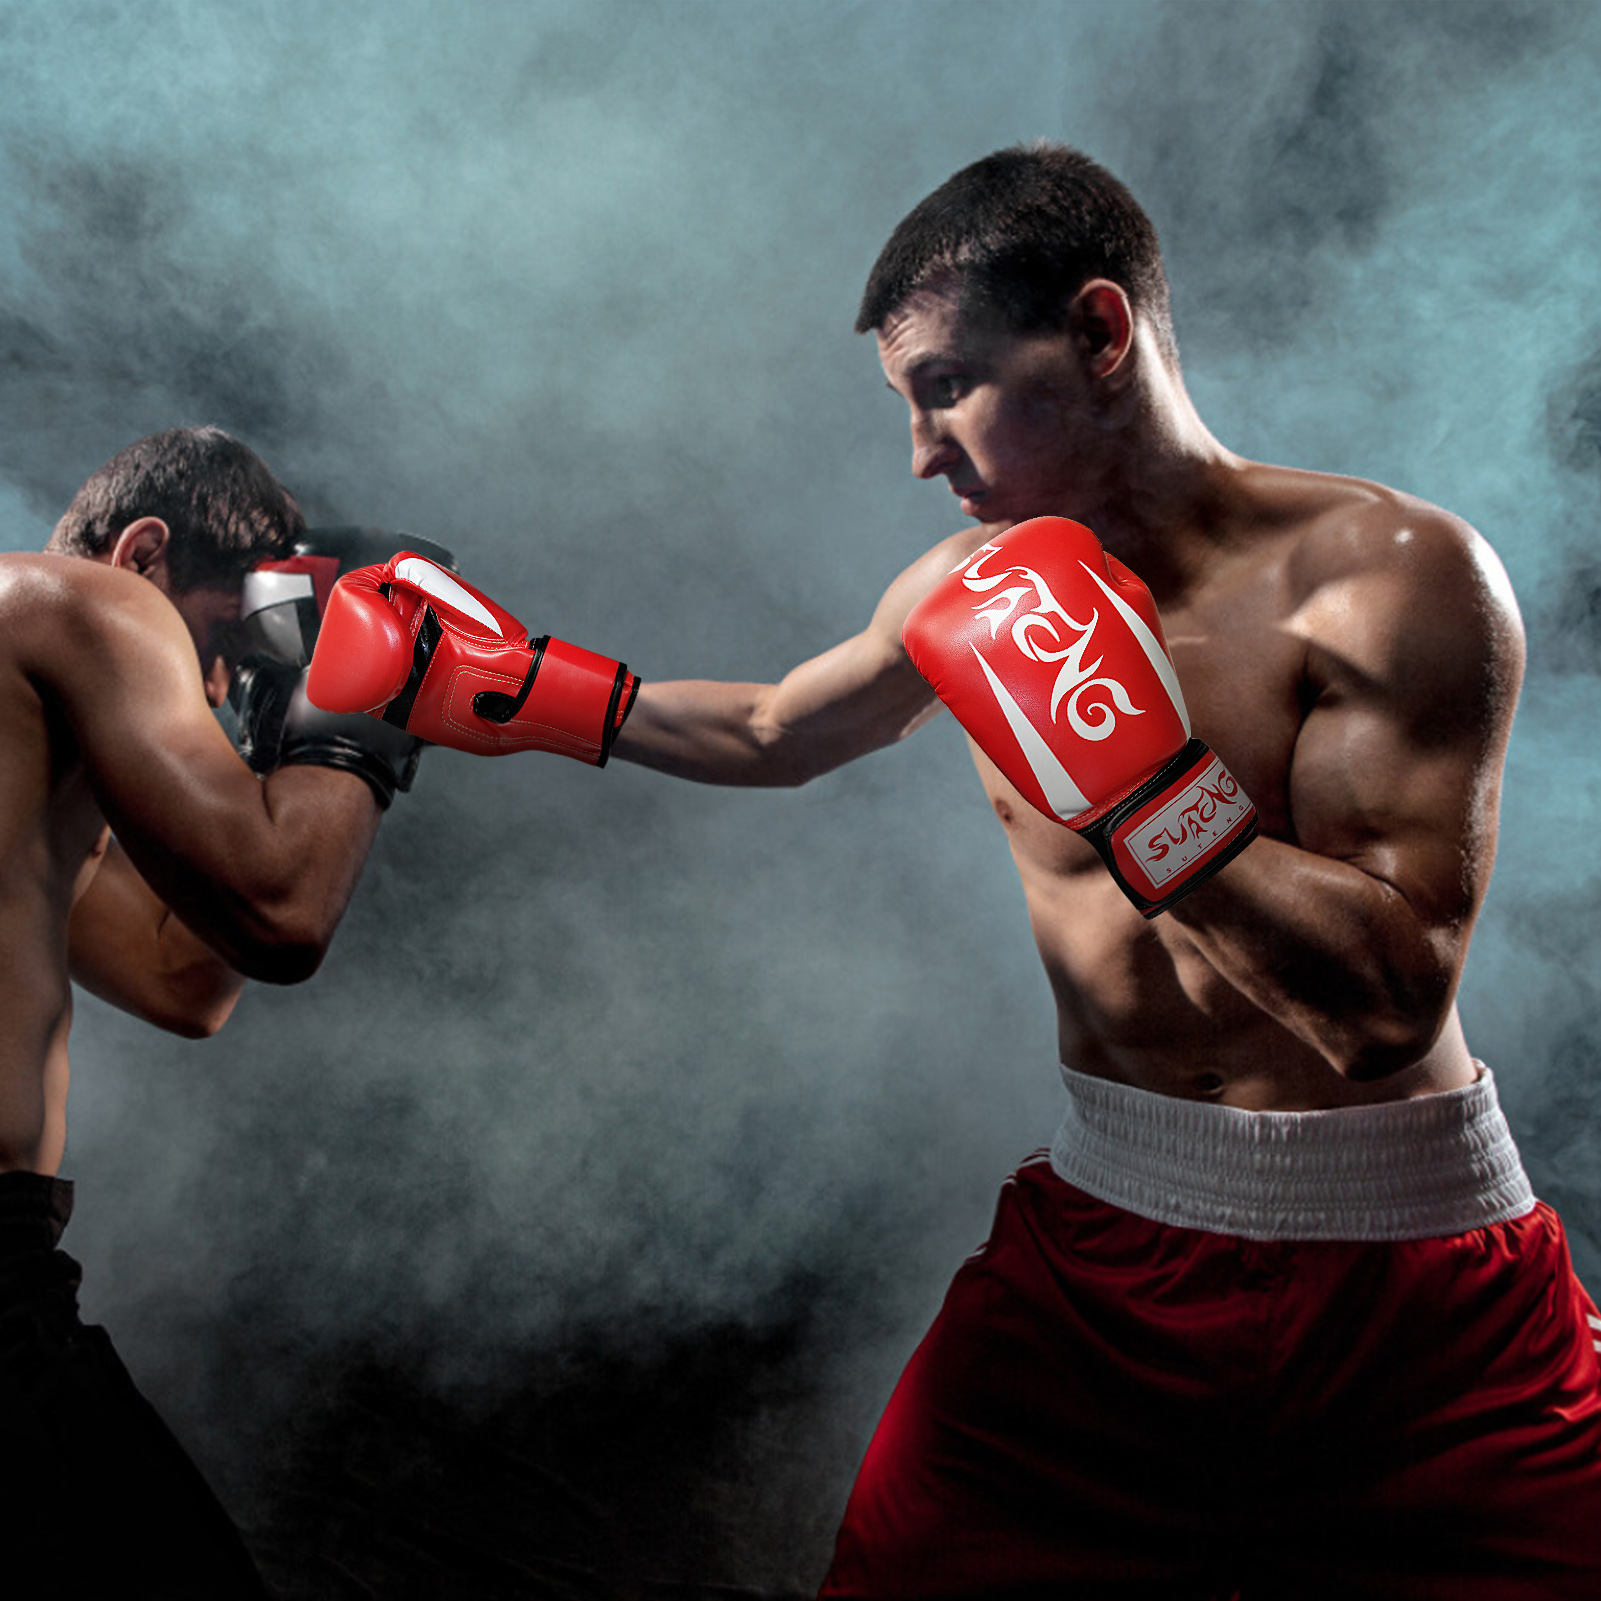 Găng tay quyền anh, Muay Thai dùng trong huẩn luyện, tập boxing